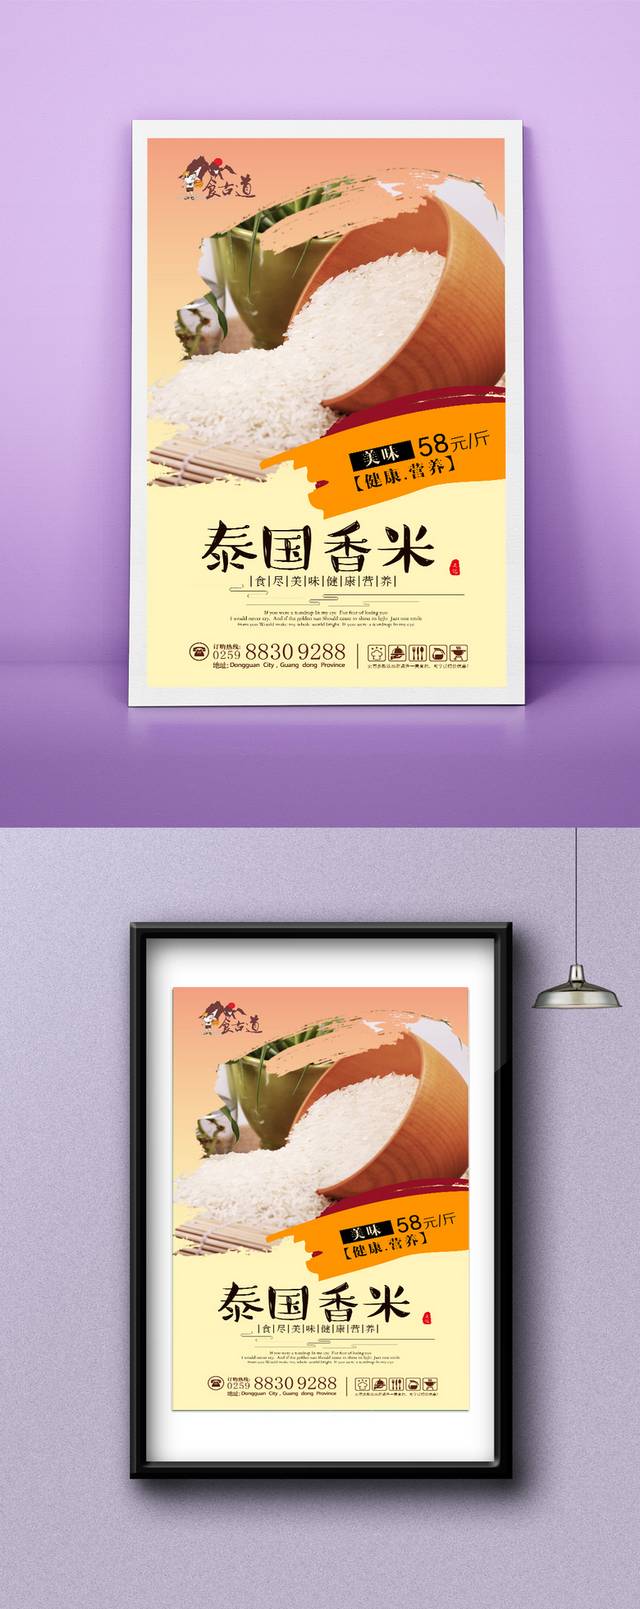 米店泰国香米高档海报设计